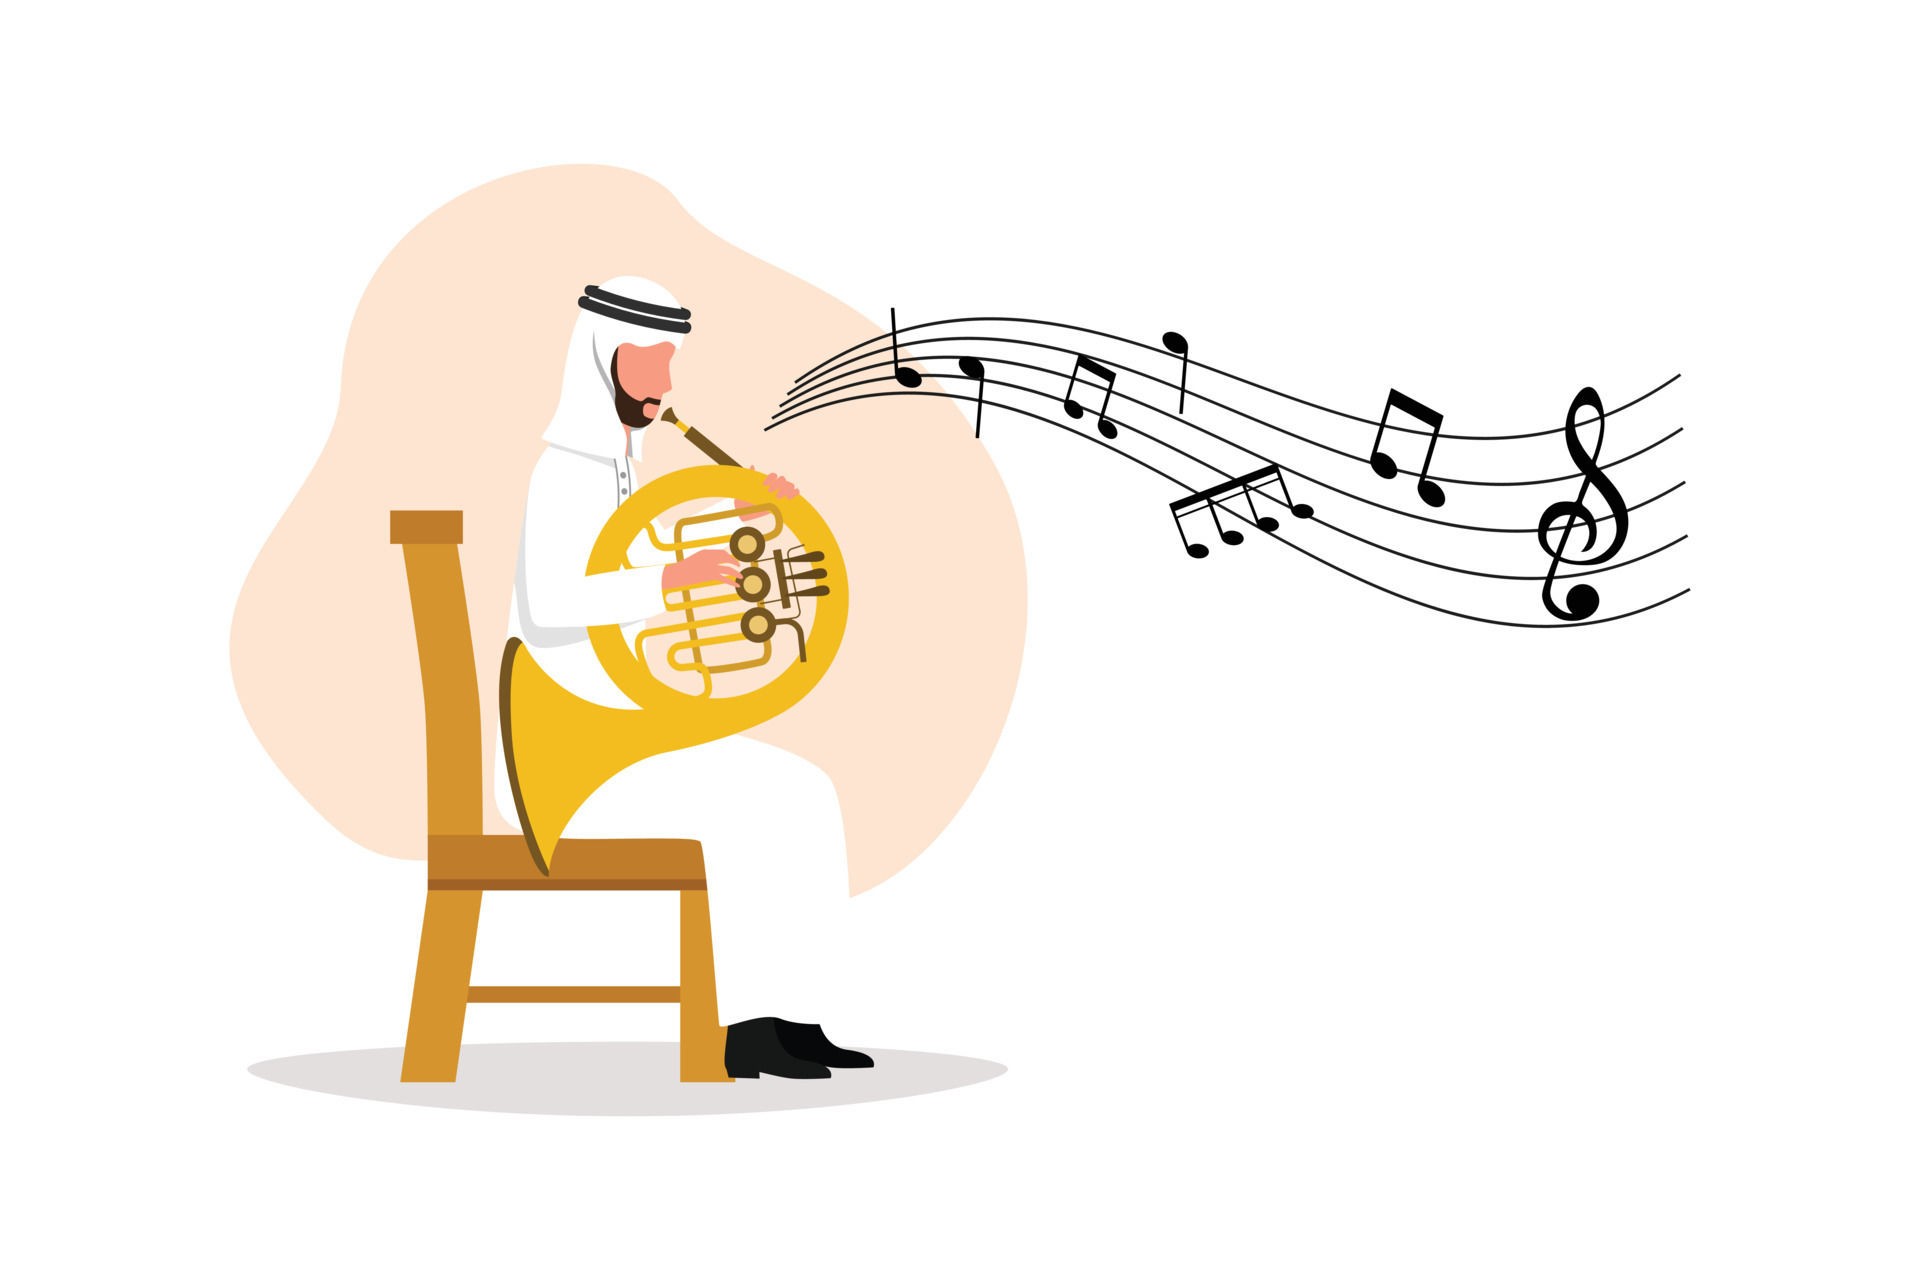 https://static.vecteezy.com/ti/gratis-vektor/p3/12486741-geschaftsflachzeichnung-arabischer-mannlicher-musiker-der-klassische-melodie-auf-franzosischem-horn-auffuhrt-instrumentalist-der-musik-auf-blasinstrument-spielt-mann-mit-trompete-cartoon-charakter-design-illustration-vektor.jpg